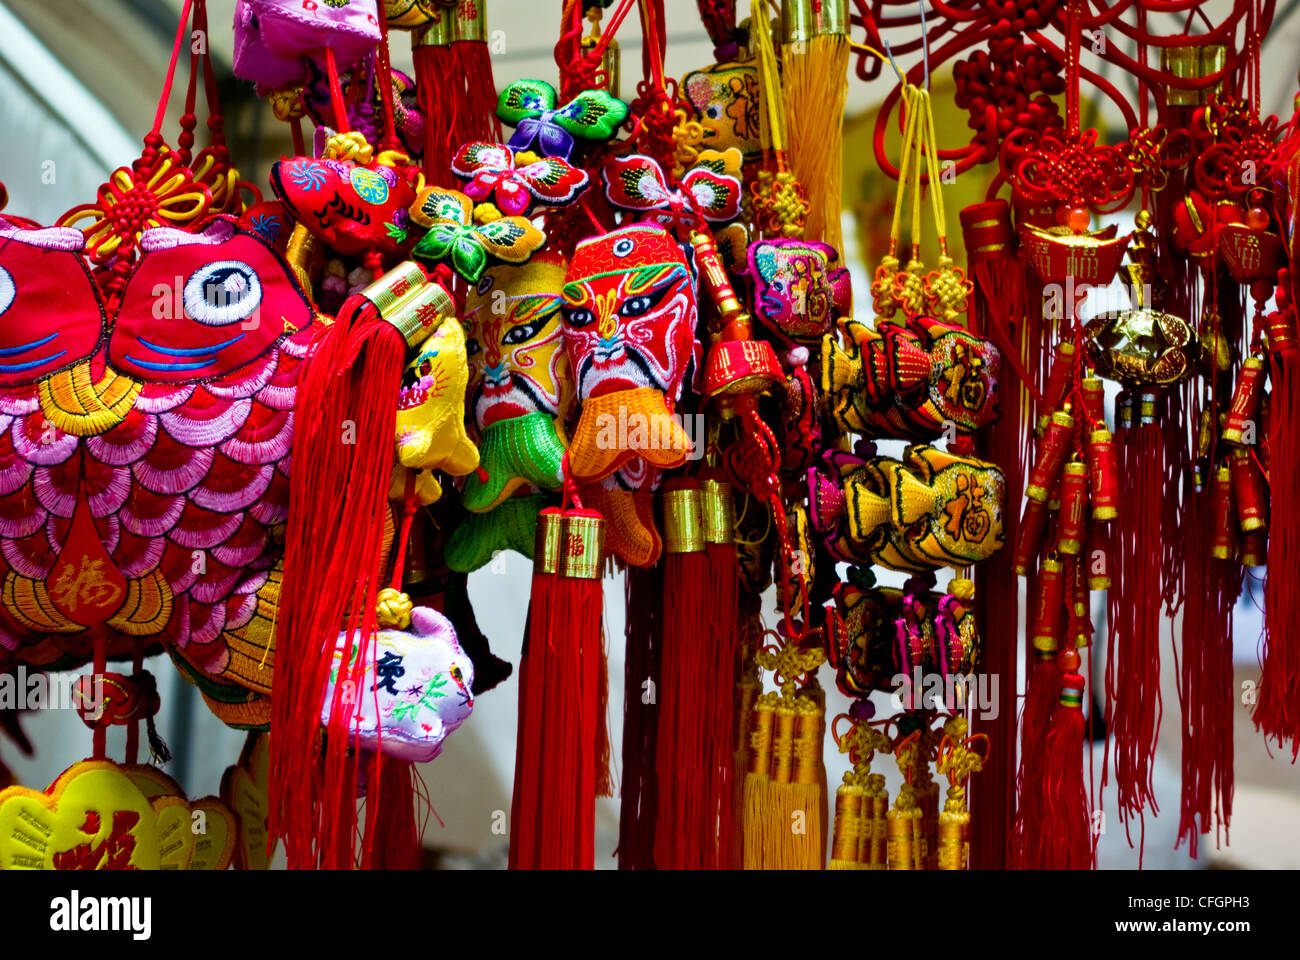 Las cometas, máscaras y adornos colgantes tejidas a celebrar el Año Nuevo Chino. Foto de stock